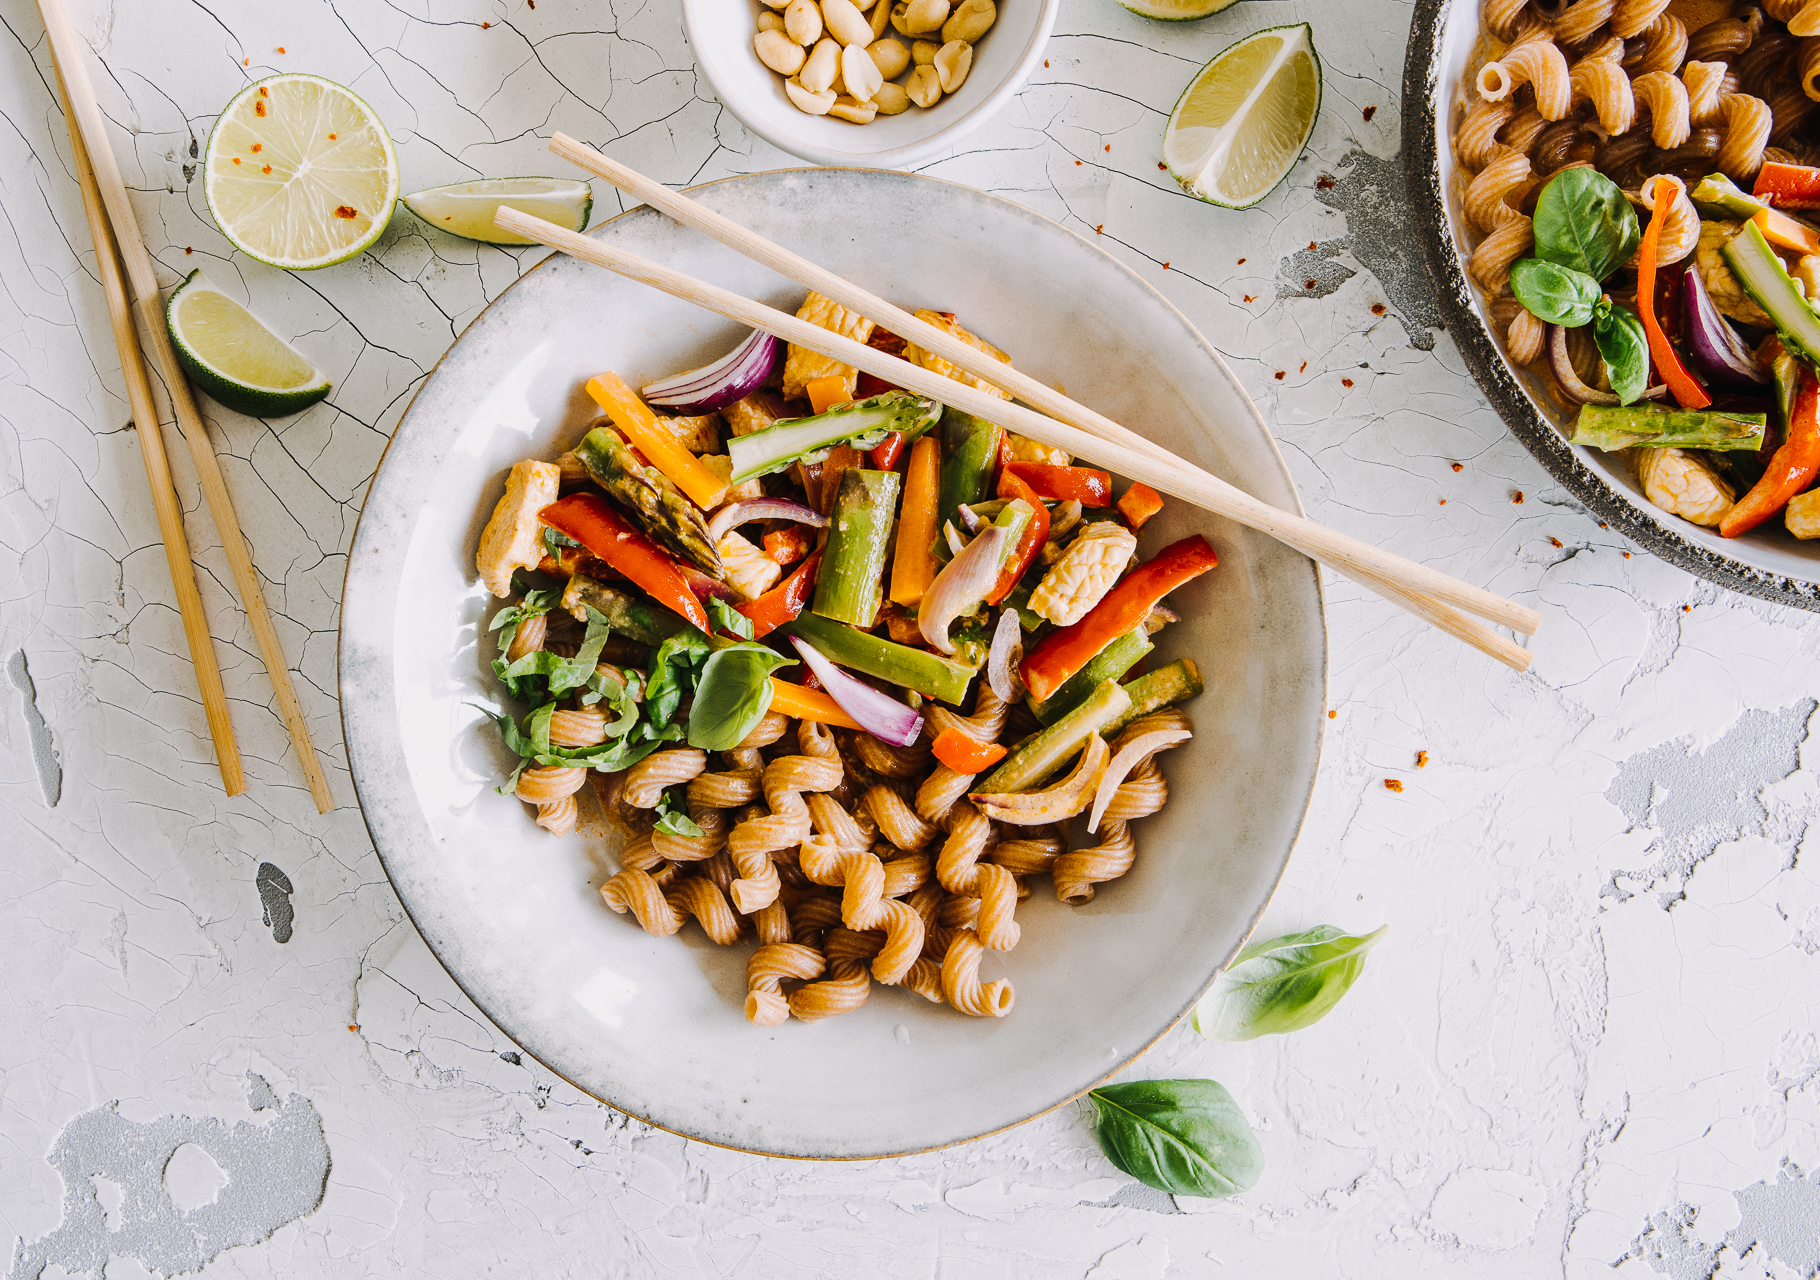 Asiatisches Curry-Gericht mit Putenstreifen, gebratenem Gemüse und Limette nach einem Rezept von Tress. Serviert in einer Schale mit Essstäbchen aus Holz.